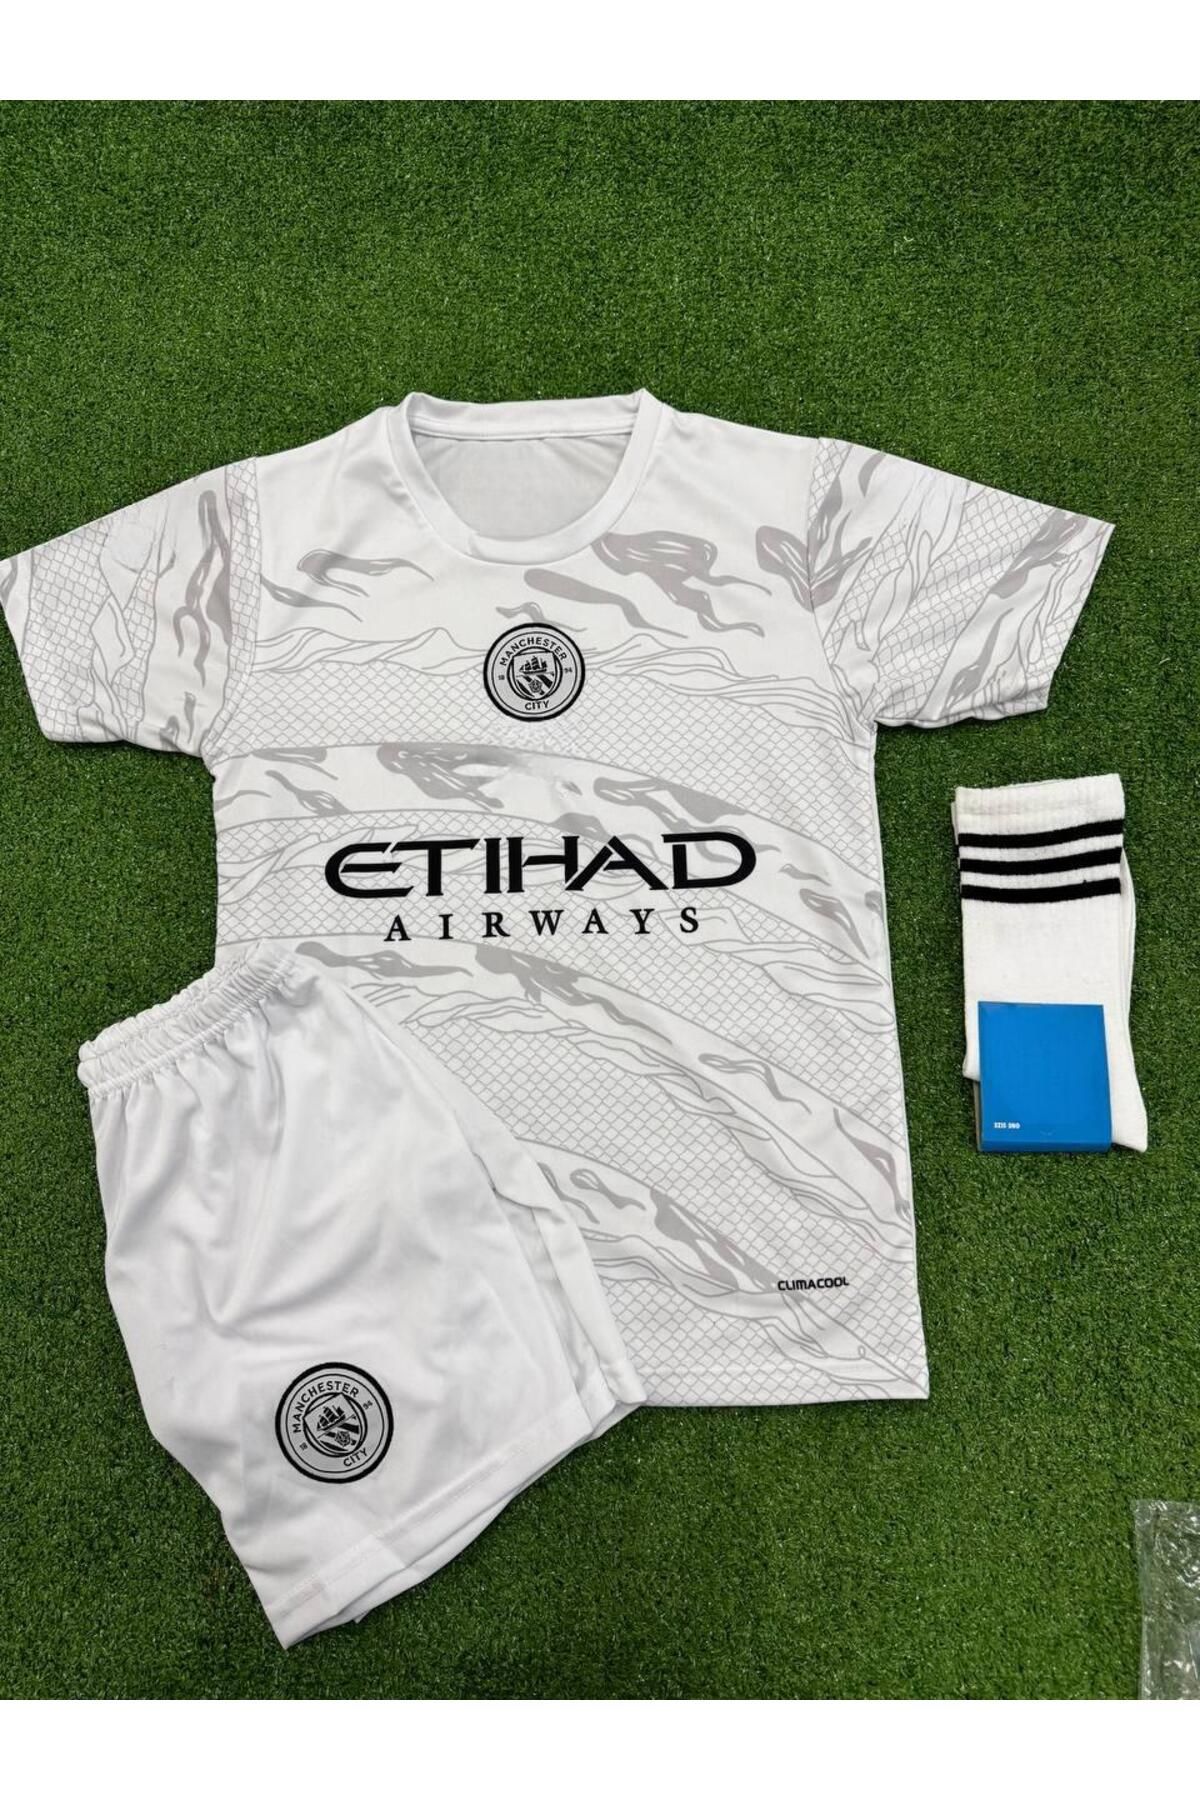 Alaturka Mix Manchester City Ejderha Yılı Forması 23/24 Yeni Sezon Futbol Çocuk Forması Forma Şort Çorap